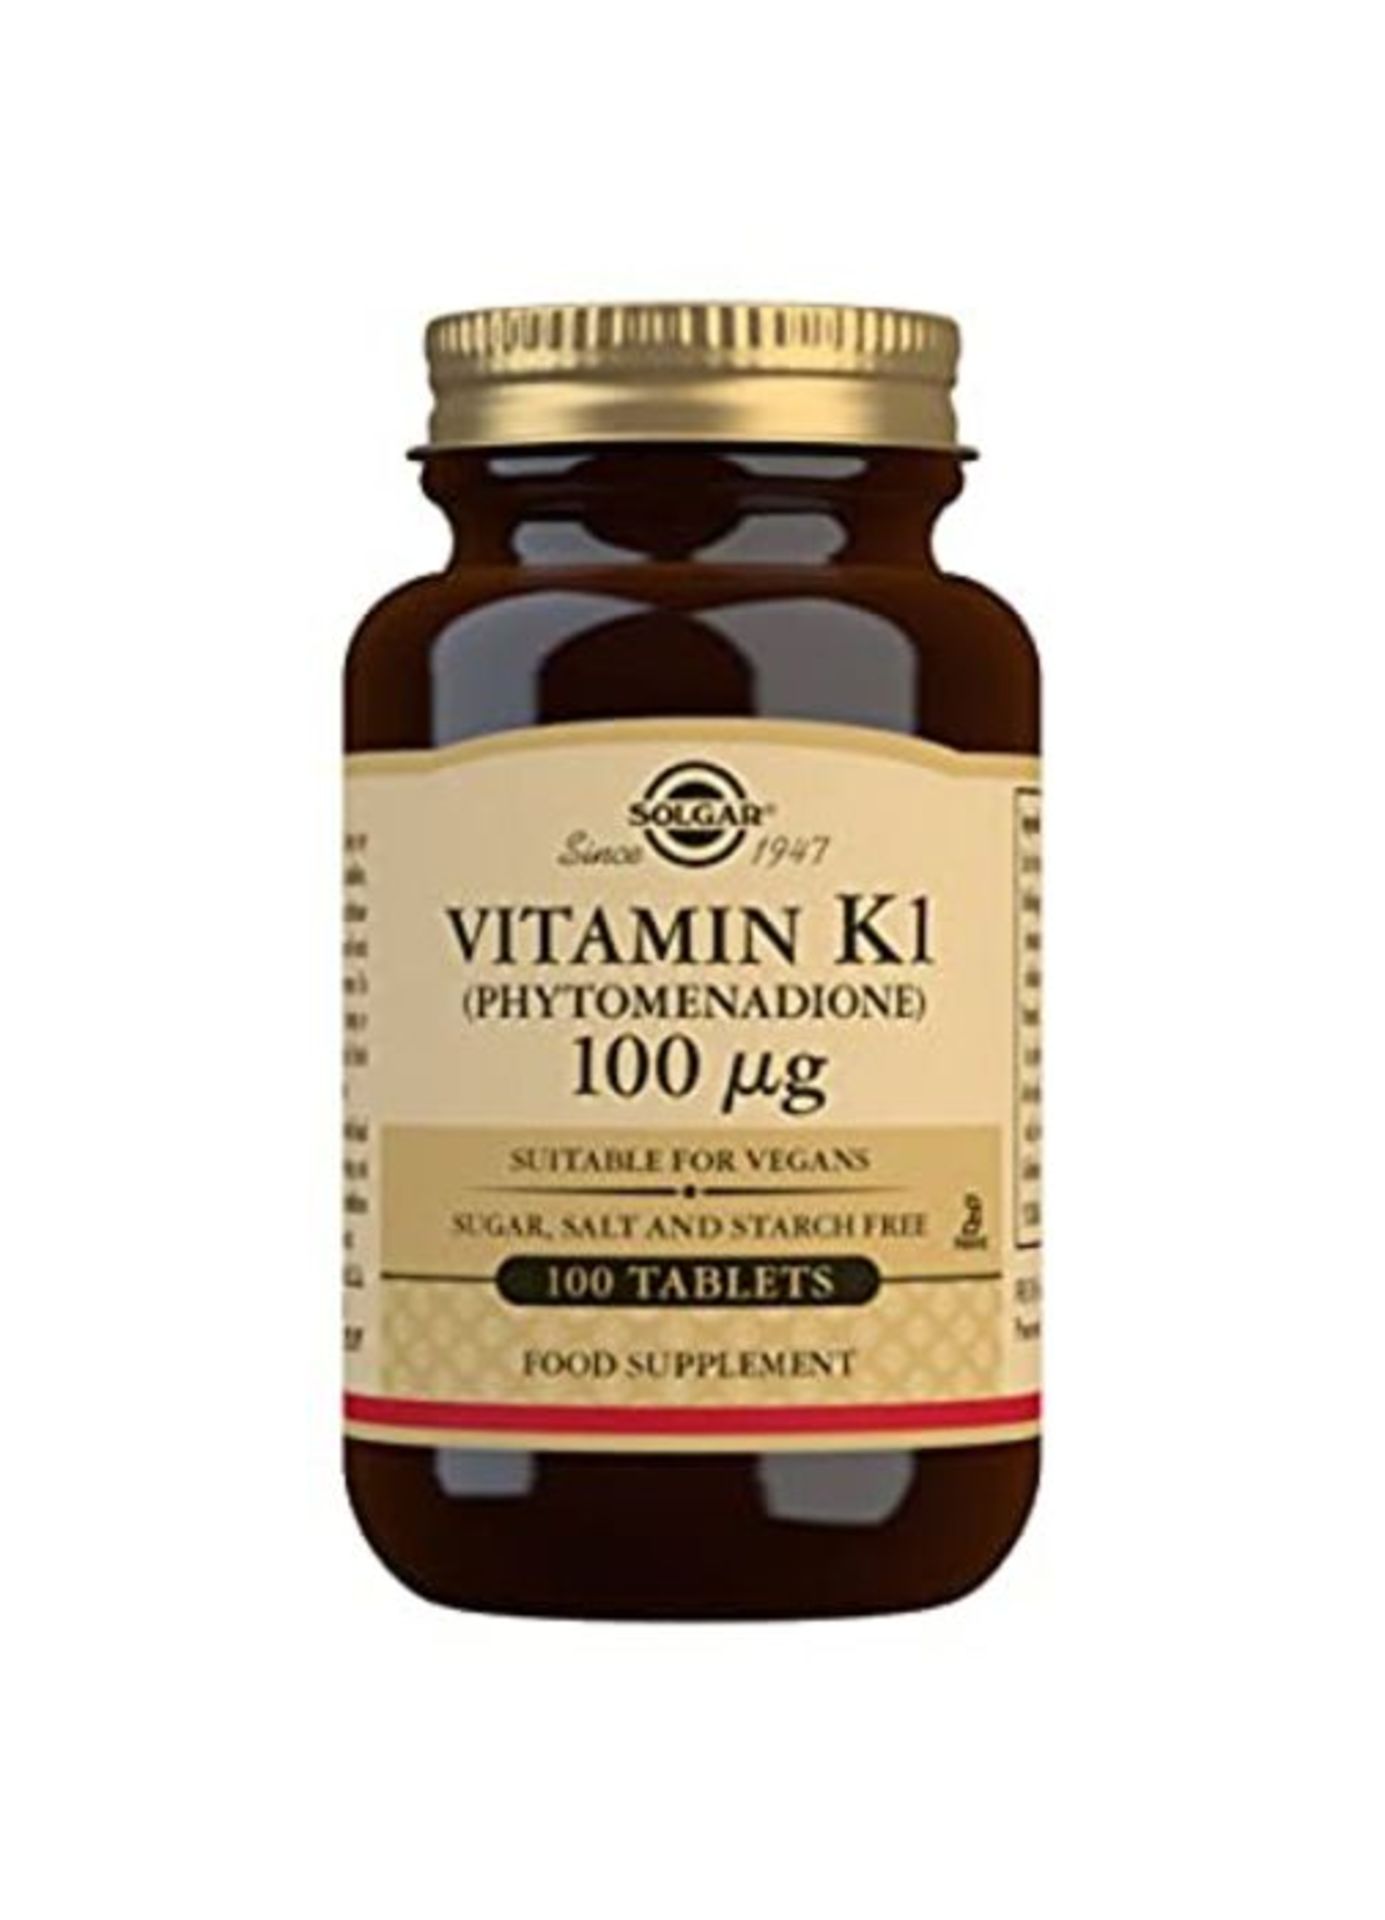 Solgar Vitamin K1 (Phytomenadione) 100 Âµg Tablets - Pack of 100